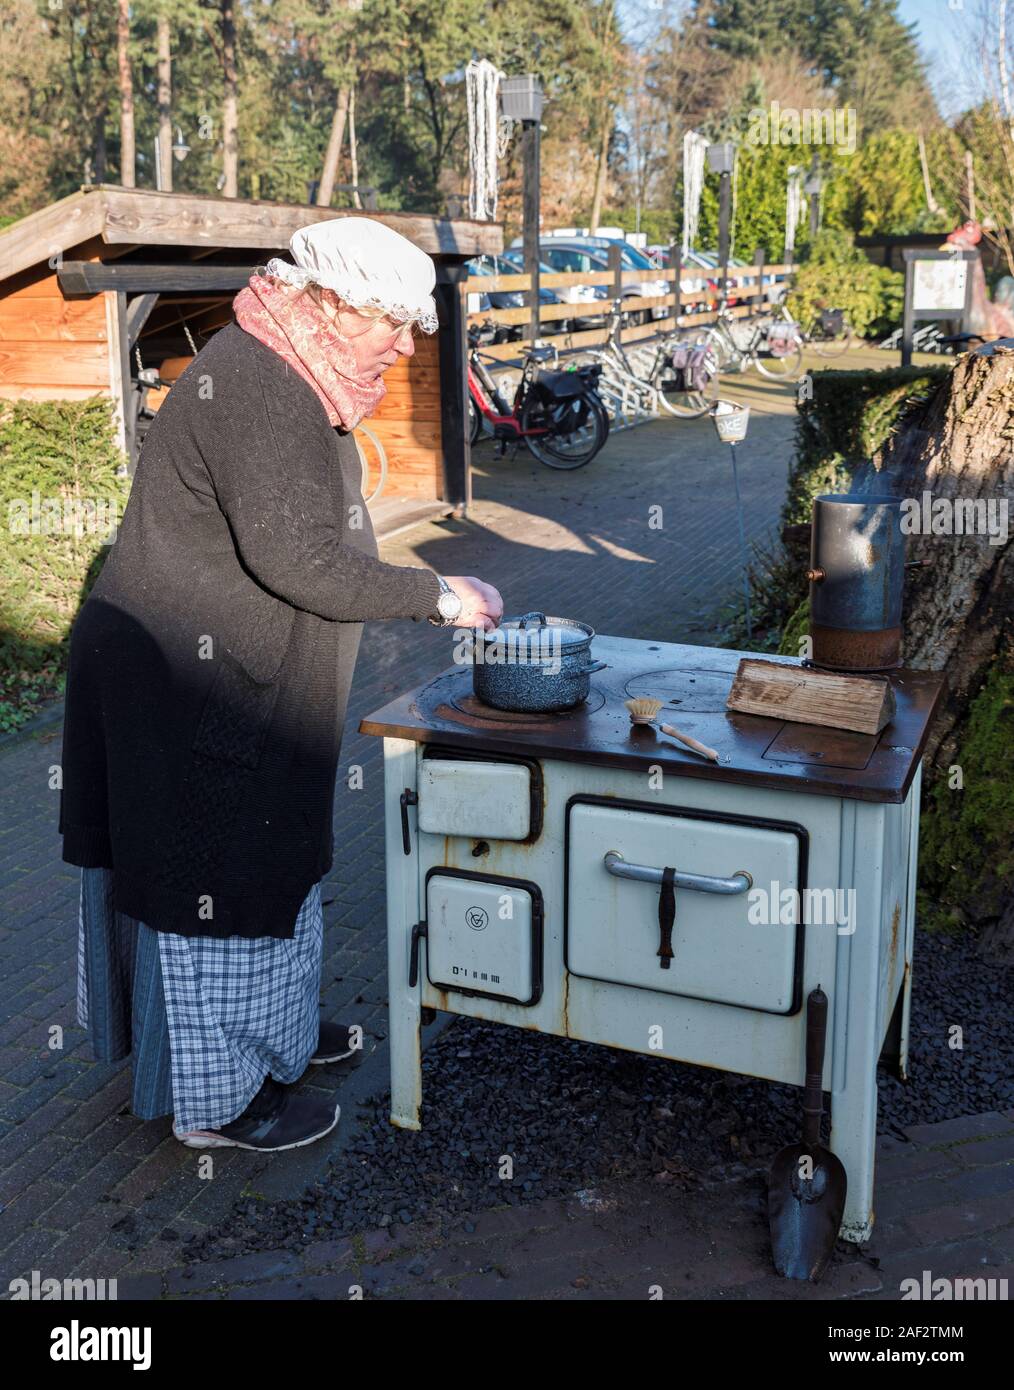 Garderen,Olanda,04-12-2019: una donna è una cottura in pentola in ceramica su una vecchia stufa a legna durante un winterfair in garderen Foto Stock